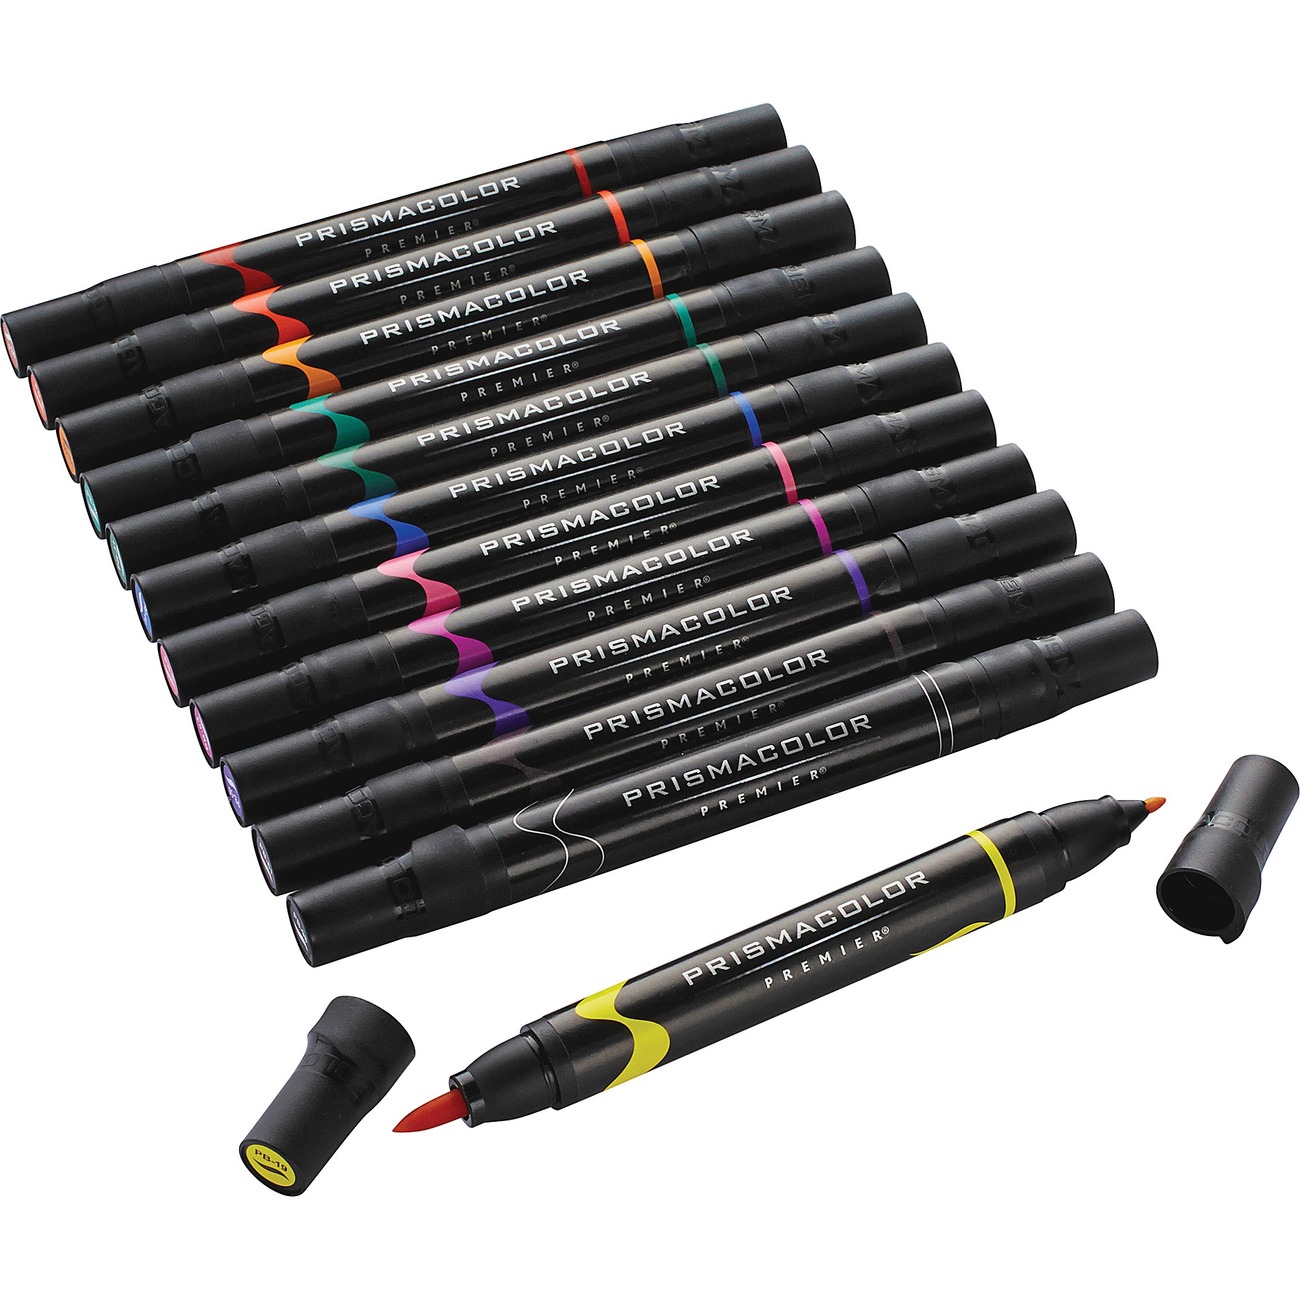 Prismacolor Premier Brush Tip Marker, Black, 4 PACK